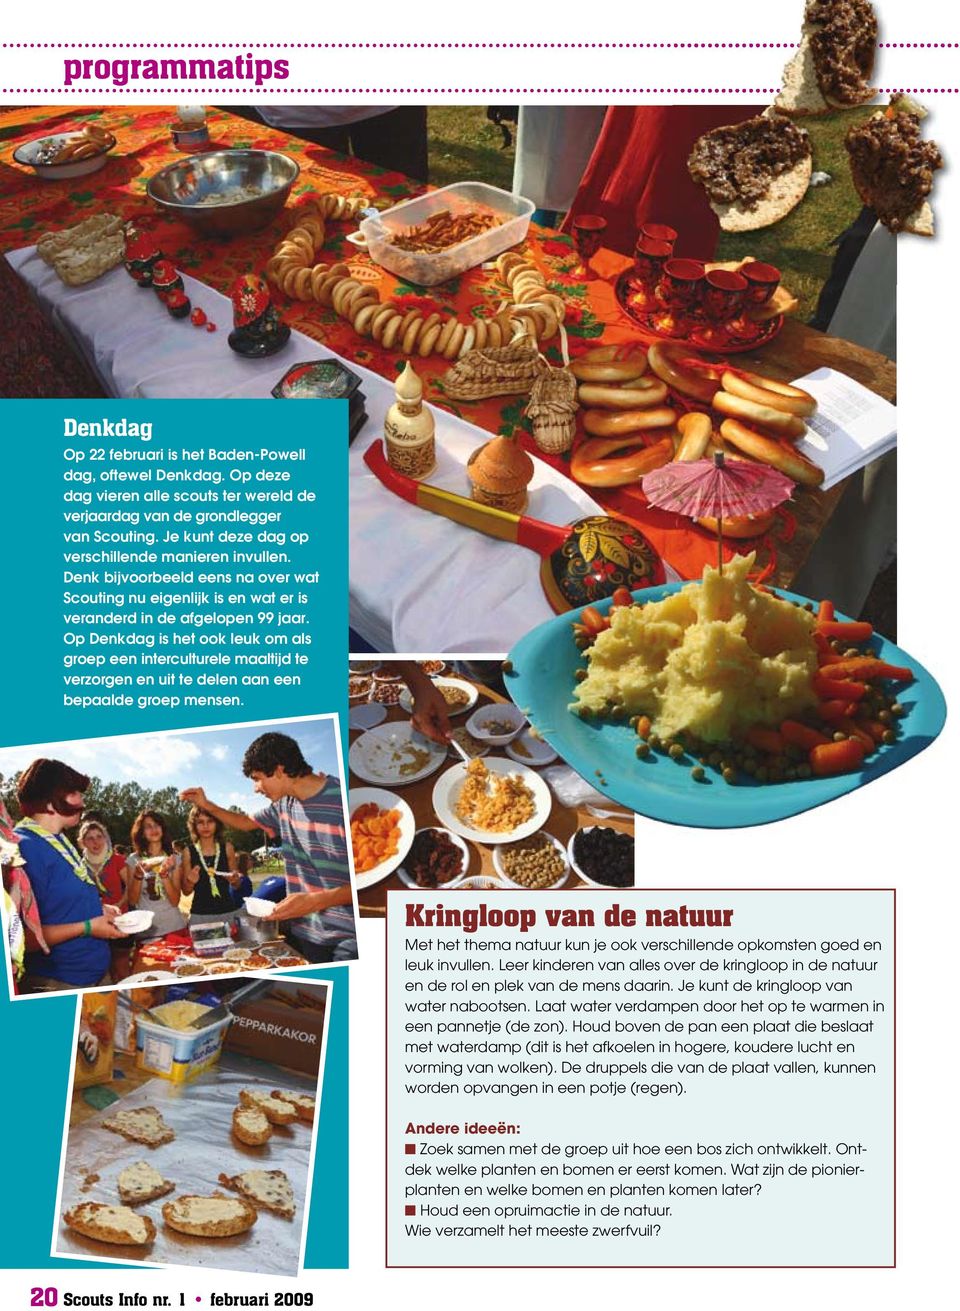 Op Denkdag is het ook leuk om als groep een interculturele maaltijd te verzorgen en uit te delen aan een bepaalde groep mensen.